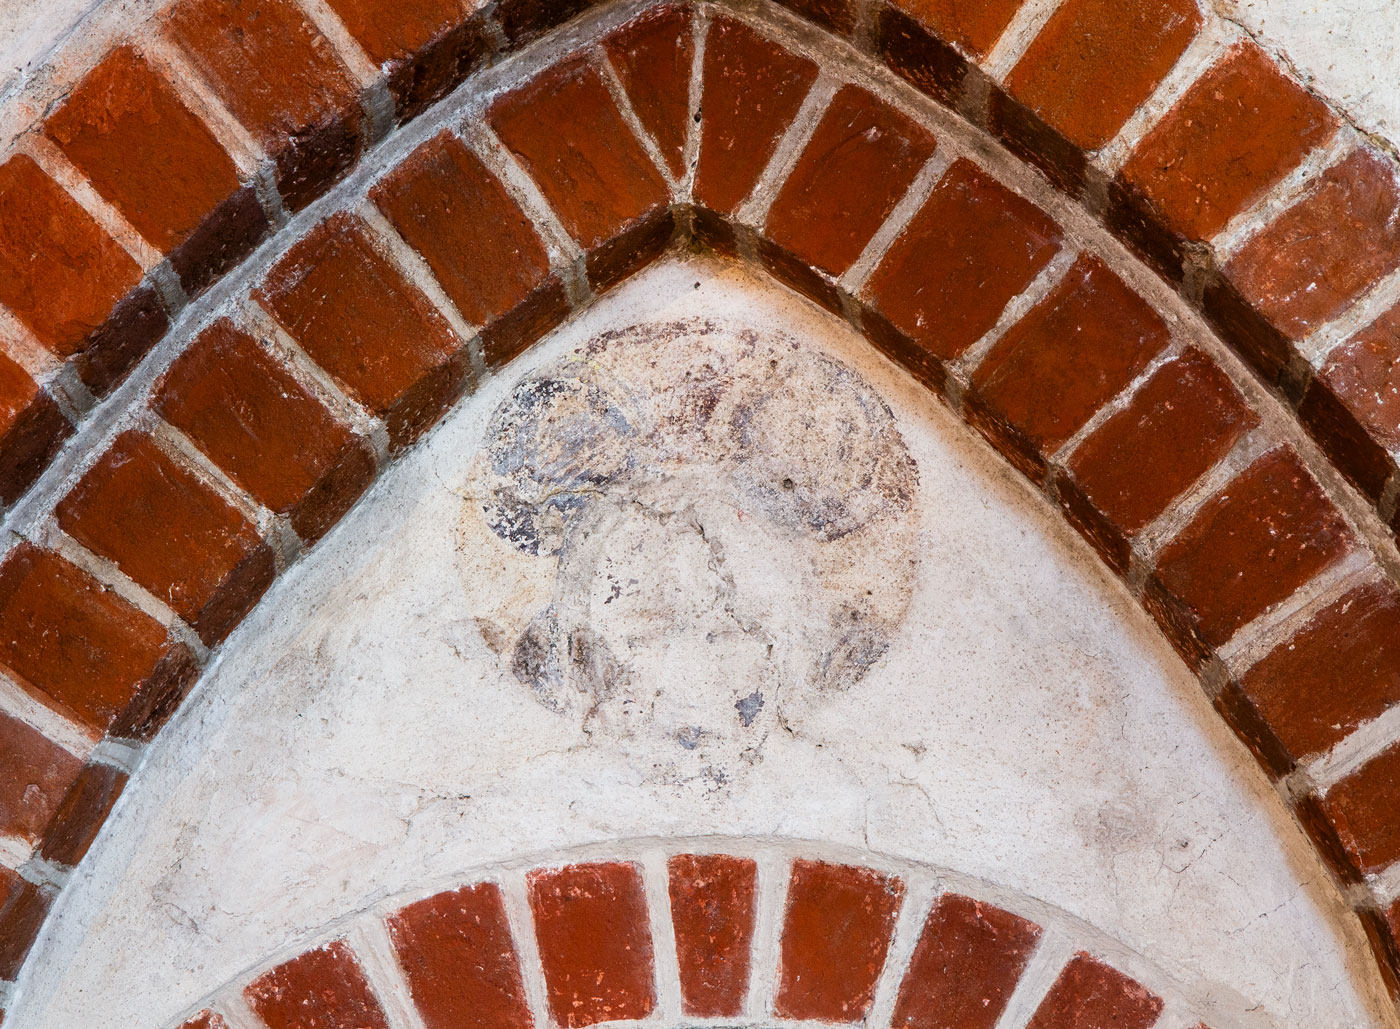 Kristushuvud med korsgloria ovanför sakristiedörren - Ösmo kyrka